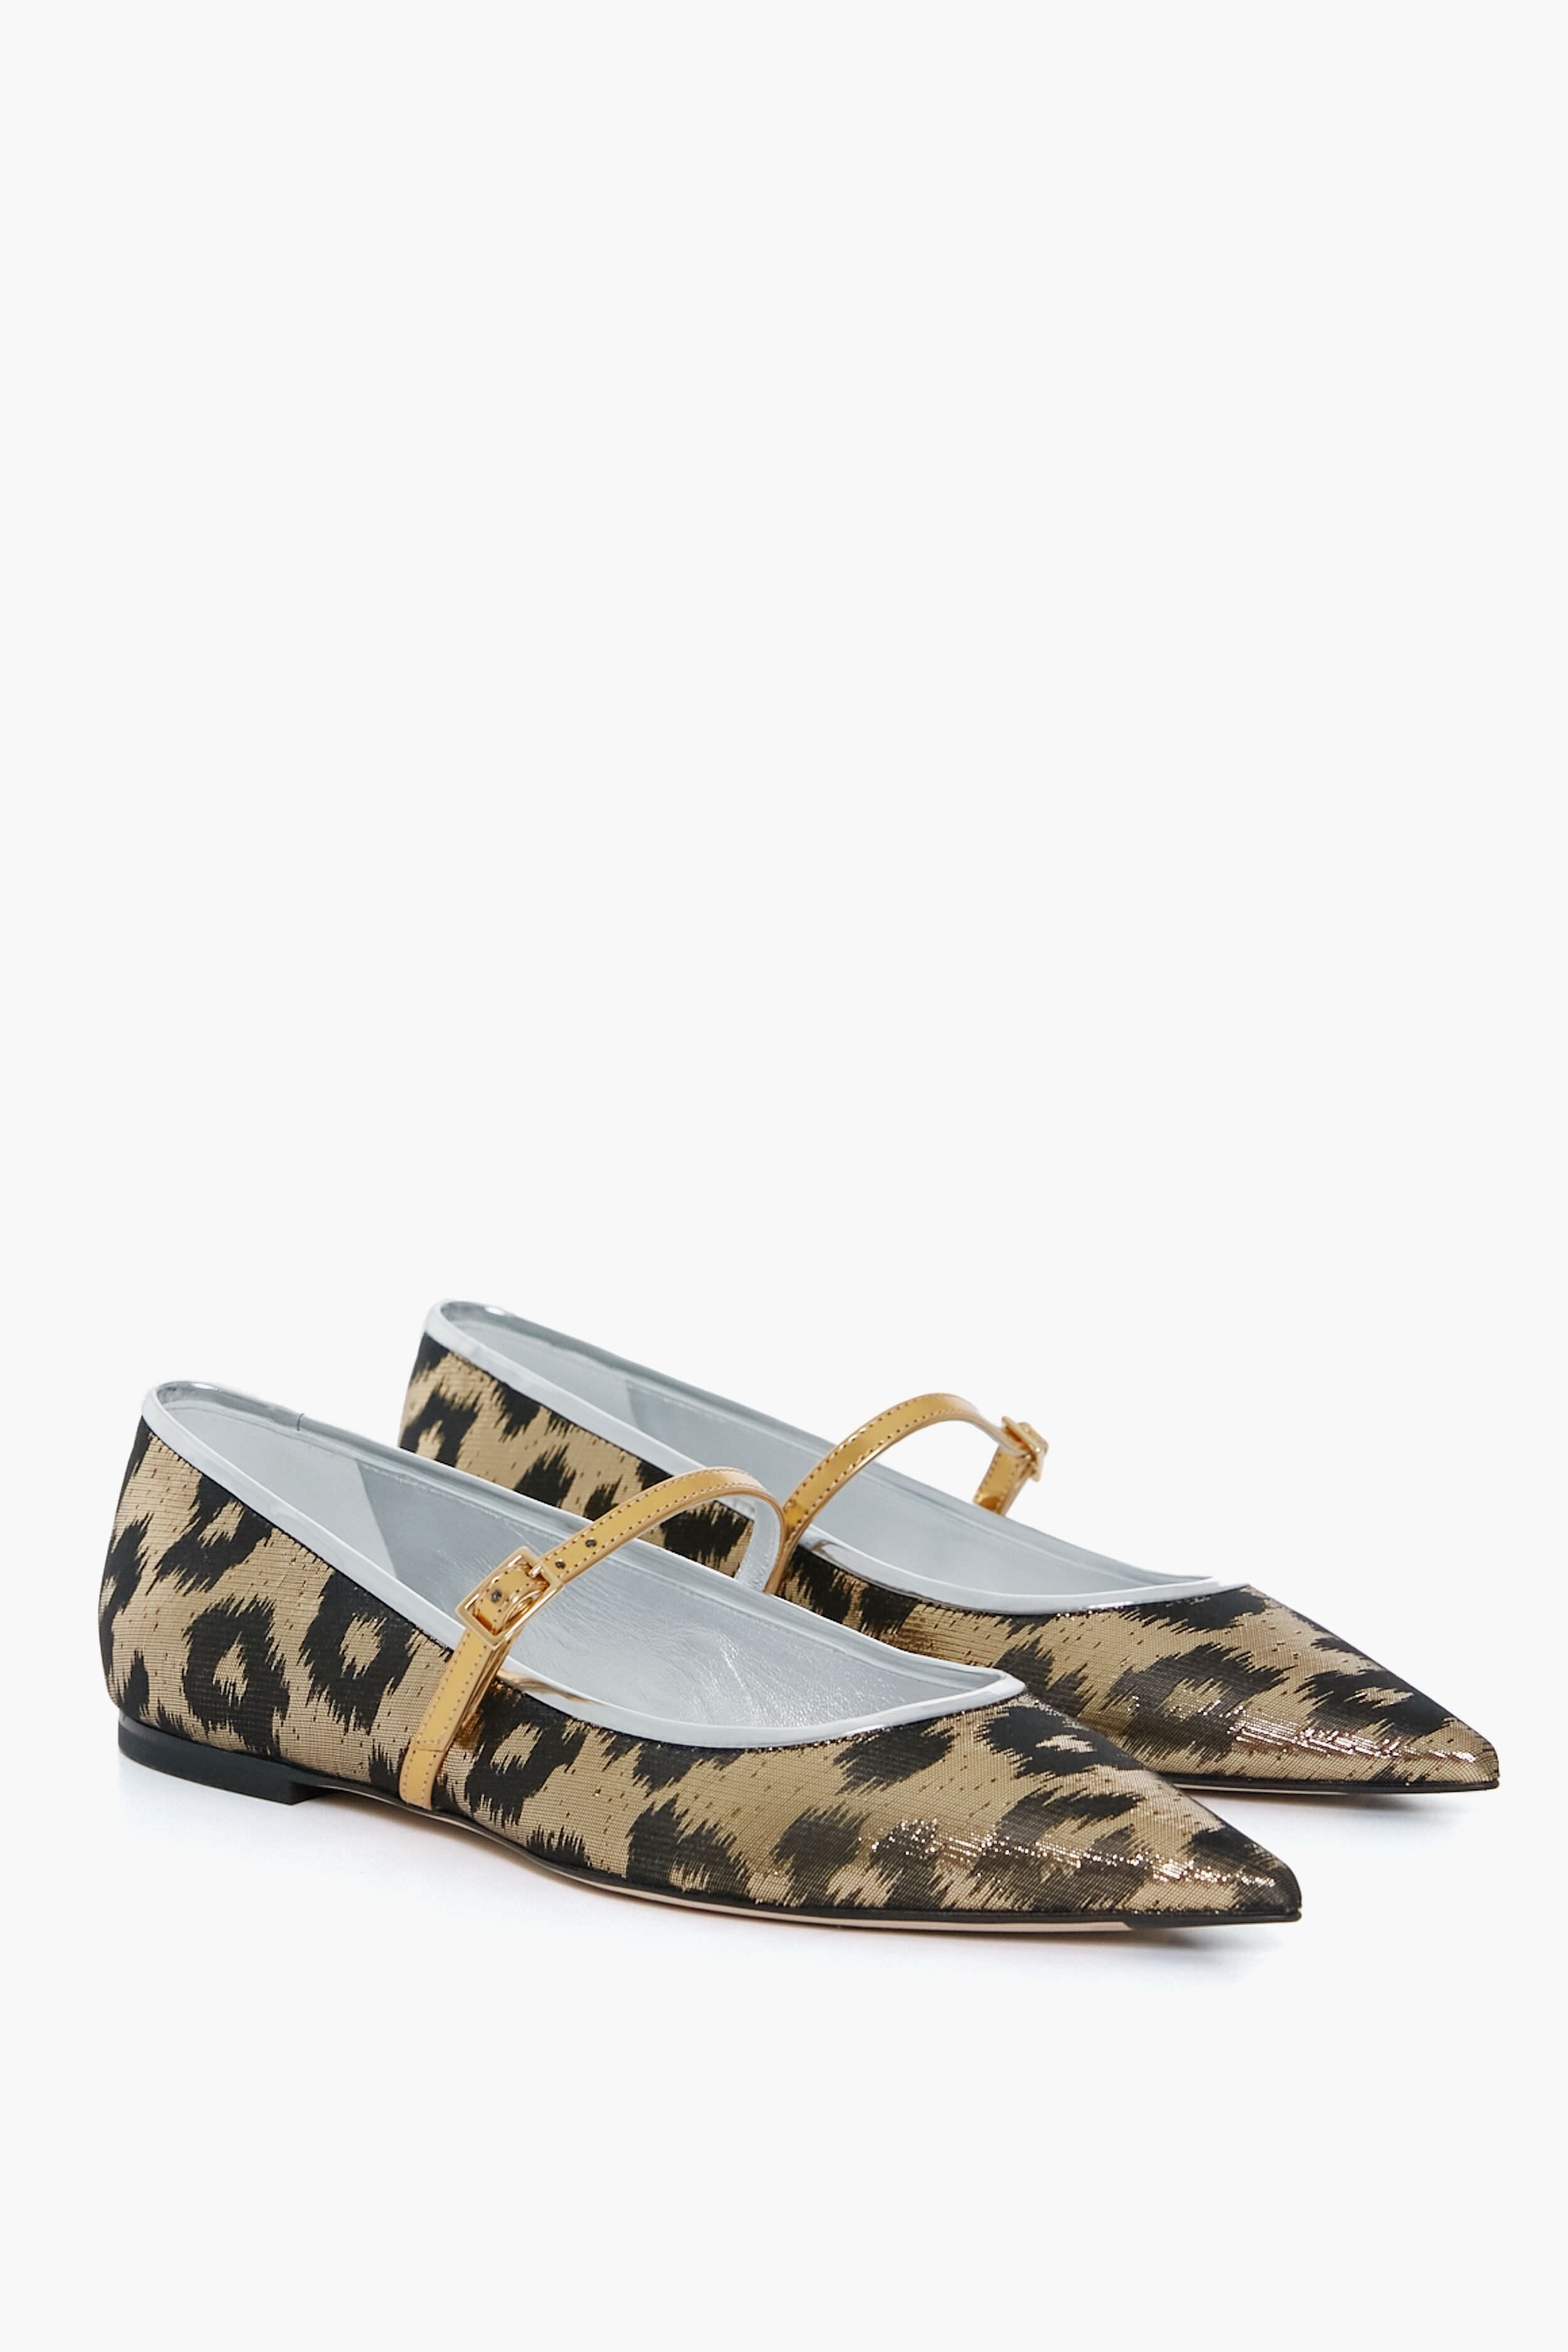 Louis Vuitton 2015 sandalias - plataforma / Sandals - Shoes - Plataform  -Fashion